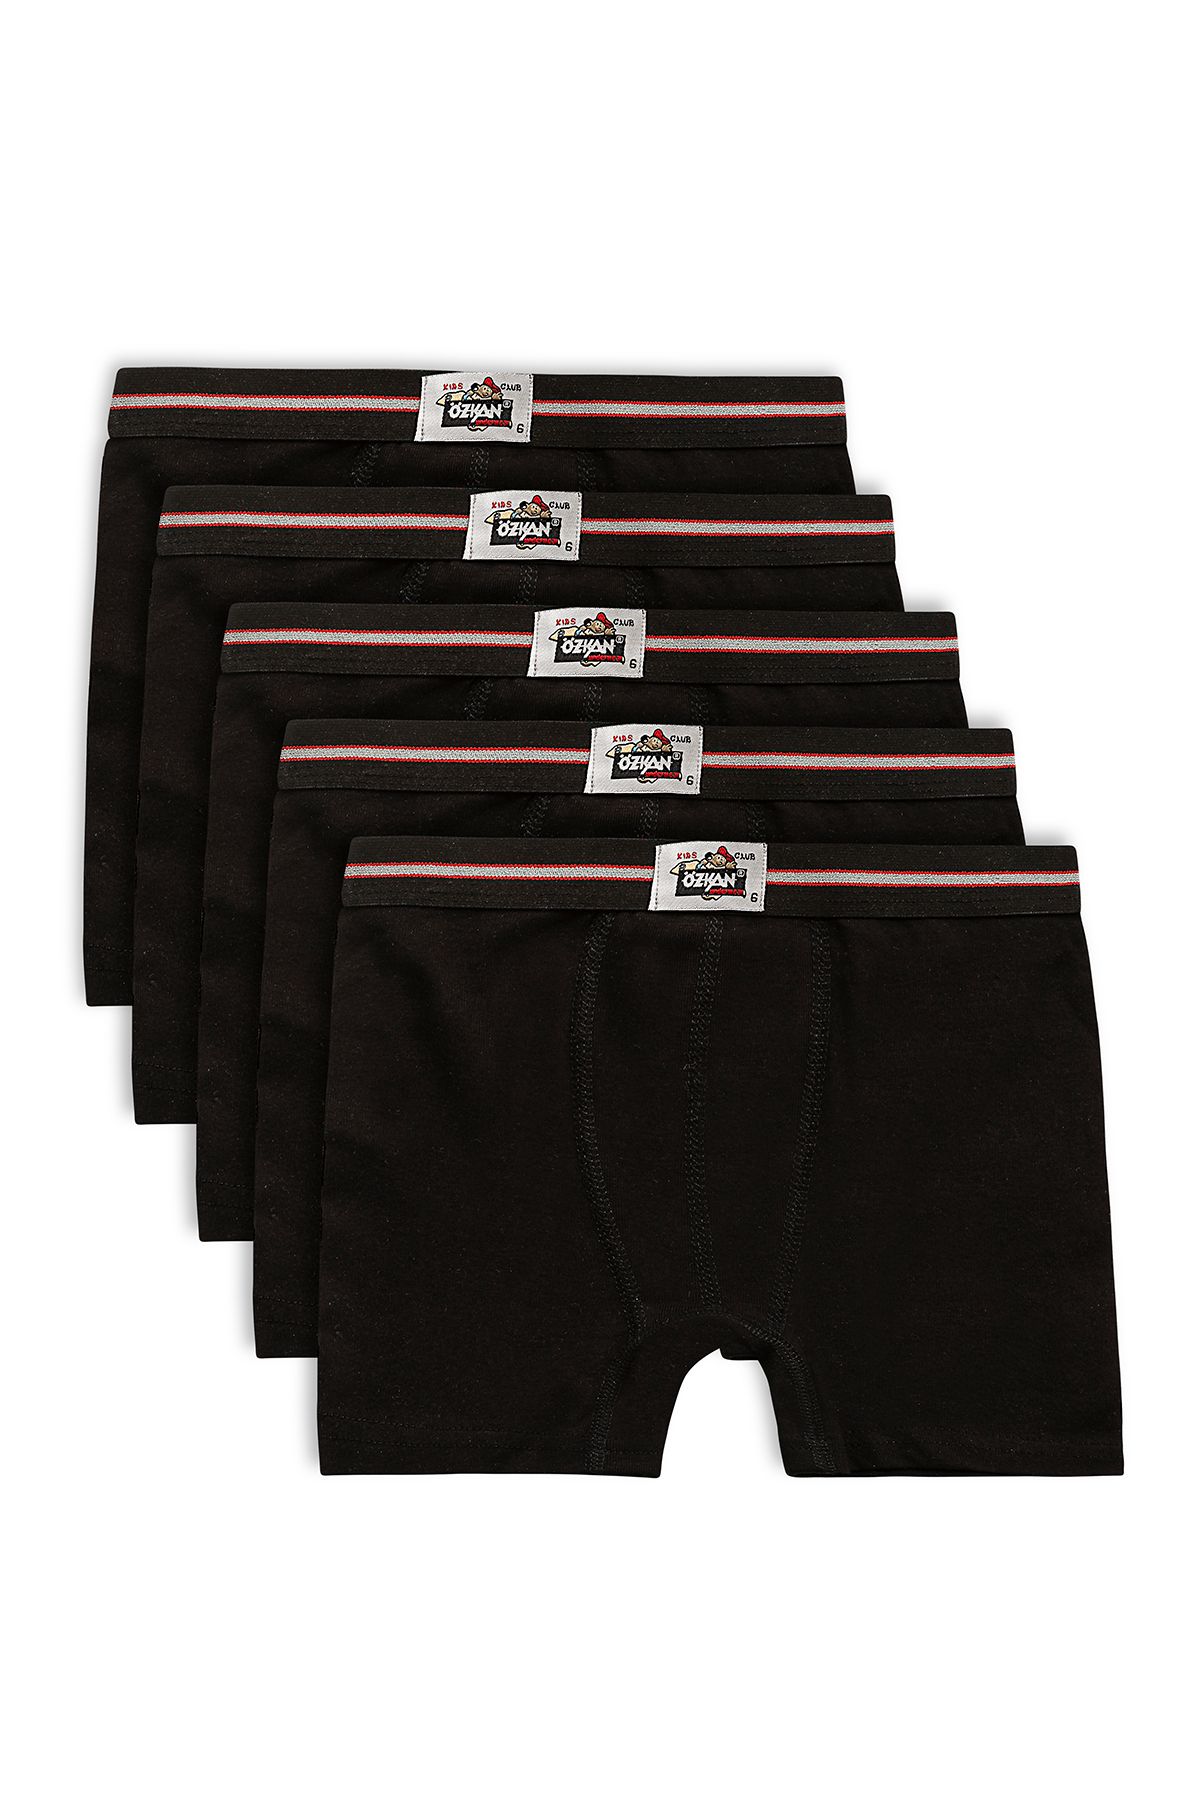 ÖZKAN underwear Özkan 0711 5'li Paket Erkek Çocuk %100 Pamuklu Esnek Yumuşak Boxer Şort